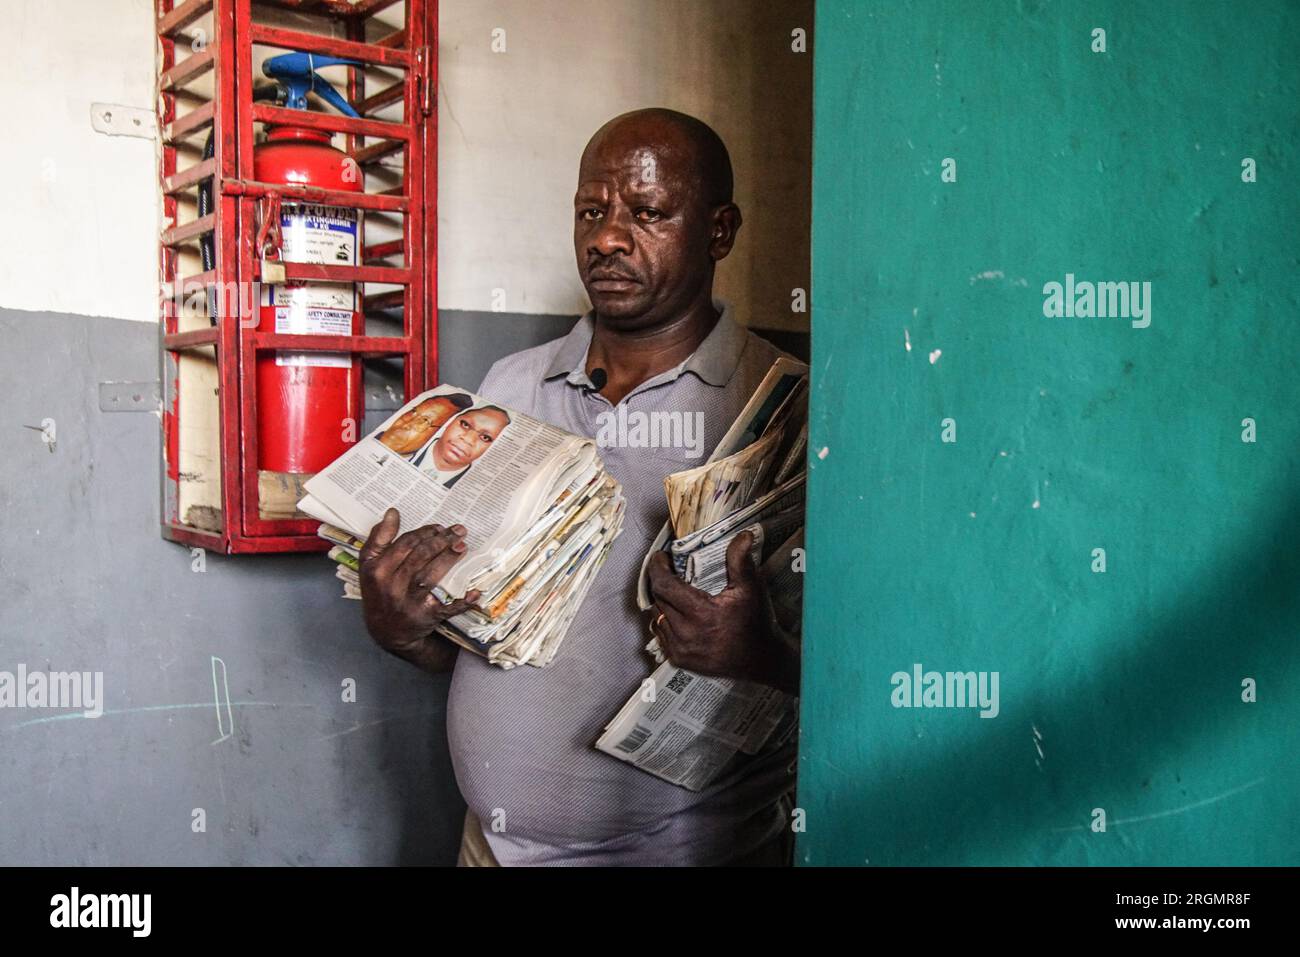 Josephat Mureithi de 54 años, hermano del periodista keniano asesinado, William Munuhe, lleva viejos periódicos kenianos que cubrían la historia del presunto prófugo del genocidio ruandés Felicien Kabuga en su taller de reparación de electrónica en la ciudad de Nakuru. La familia del difunto periodista keniano William Munuhe, quien fue asesinado el 14 de enero de 2003, mientras ayudaba a la policía y al FBI a localizar a Felicien Kabuga. Se espera que el presunto cerebro del genocidio ruandés enfermo, Felicien Kabuga, de 87 años de edad, sea liberado tras el Mecanismo Residual Internacional de las Naciones Unidas para la Crimina Foto de stock